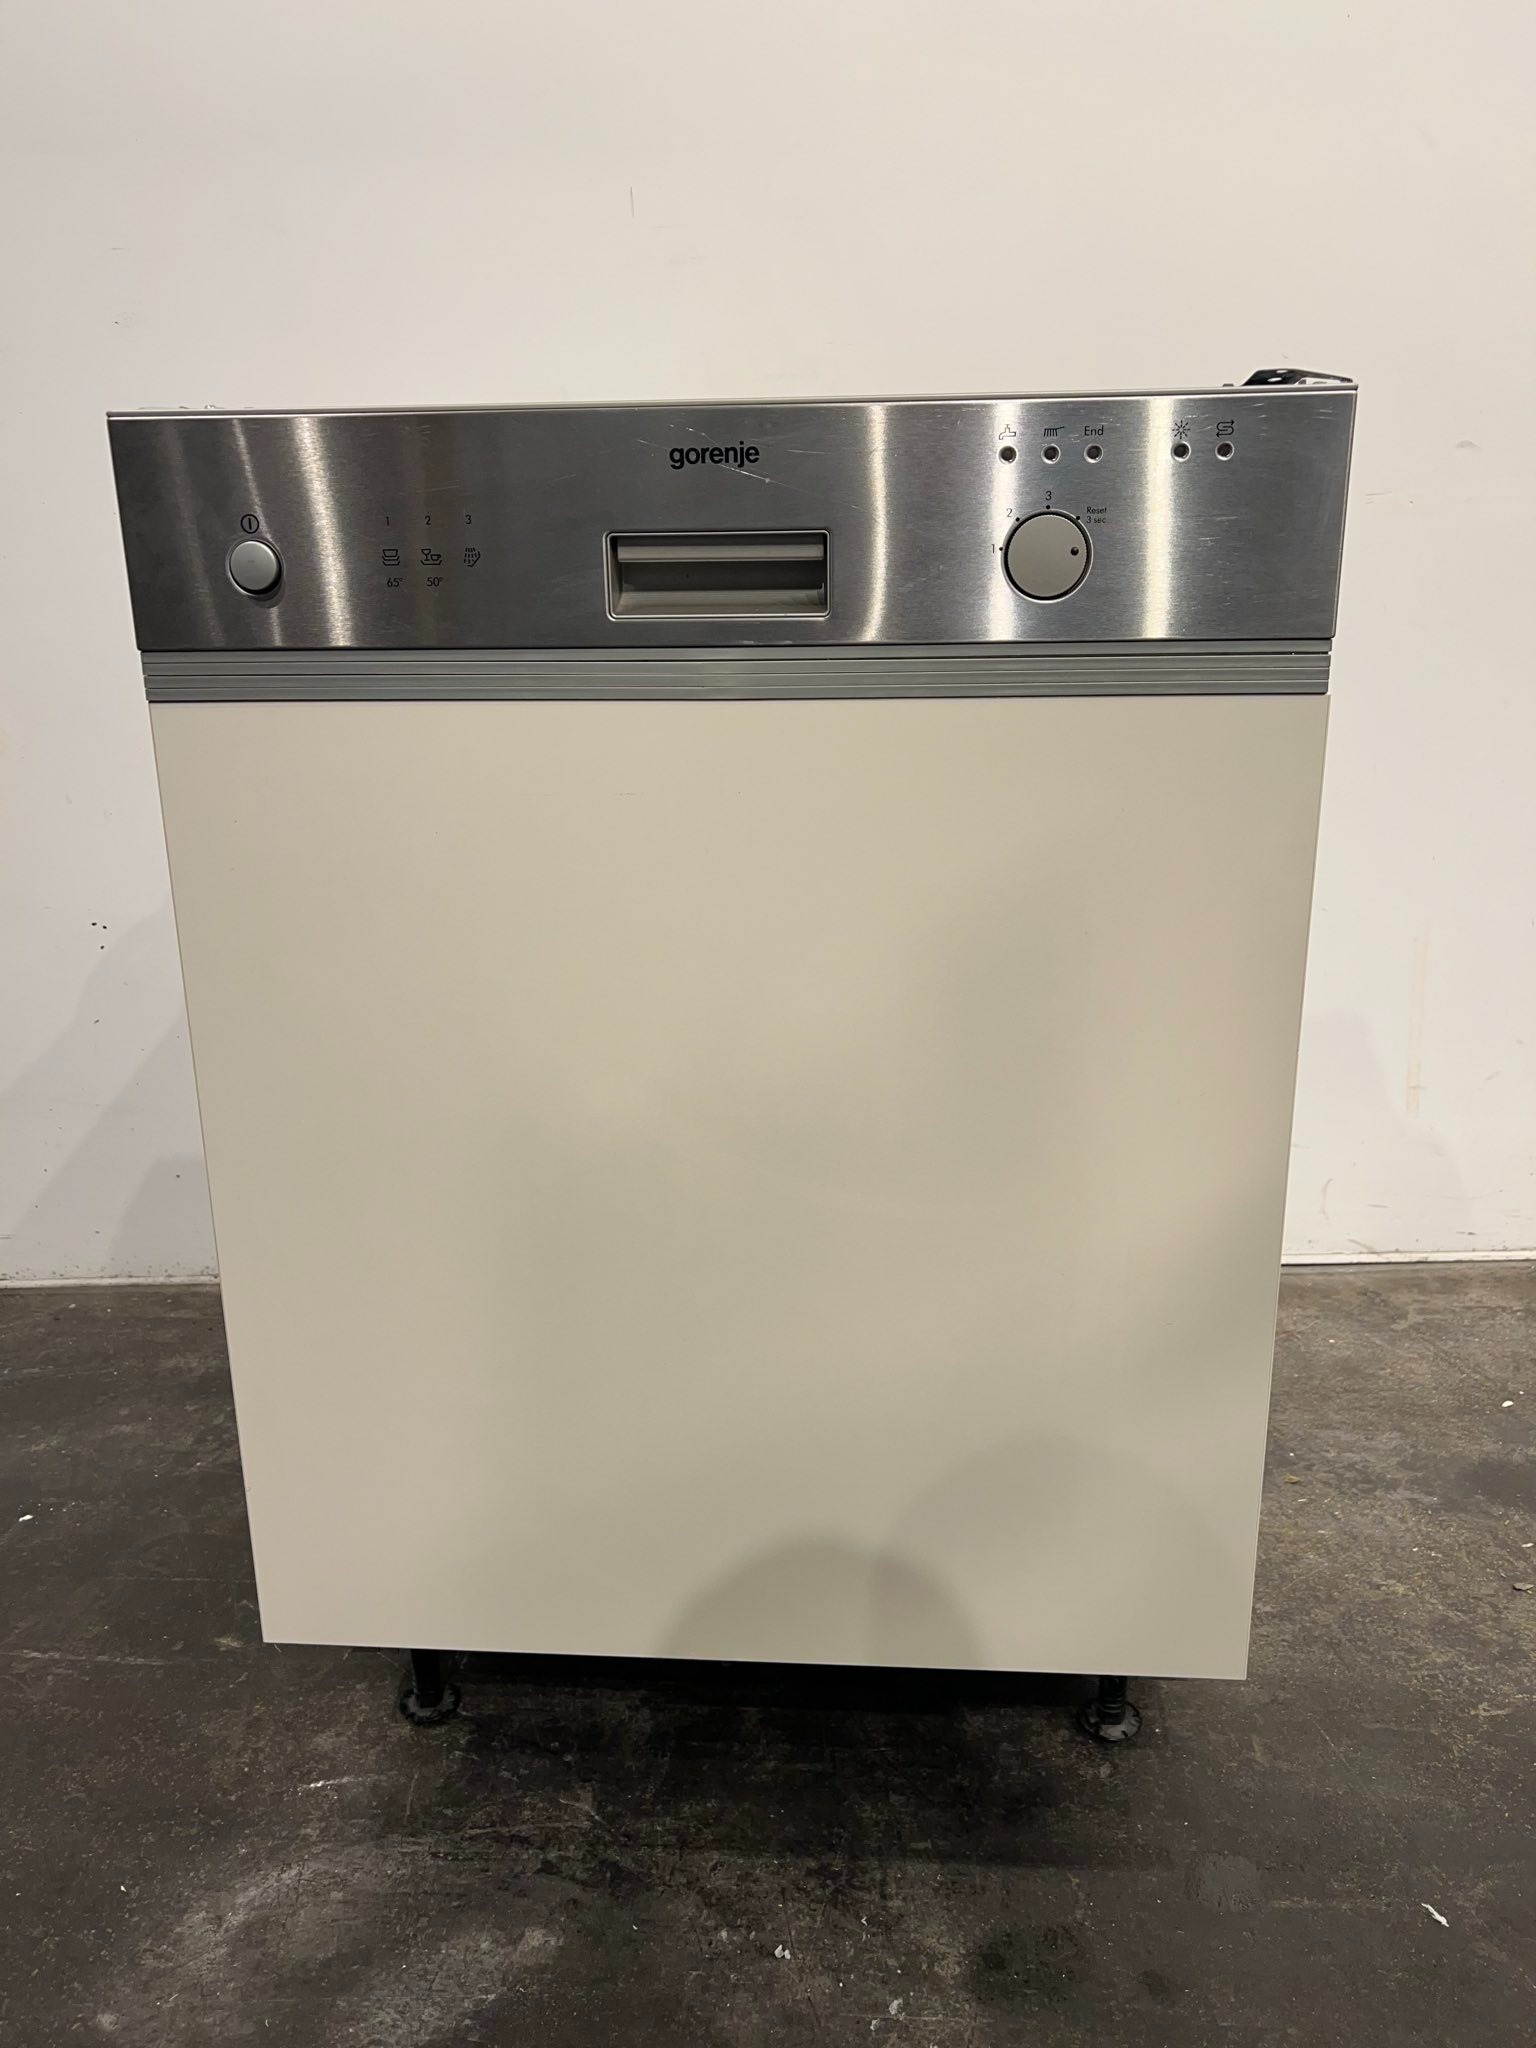 Einbau-Spülmaschine / Geschirrspülmaschine Gorenje SL1501GN, gebraucht